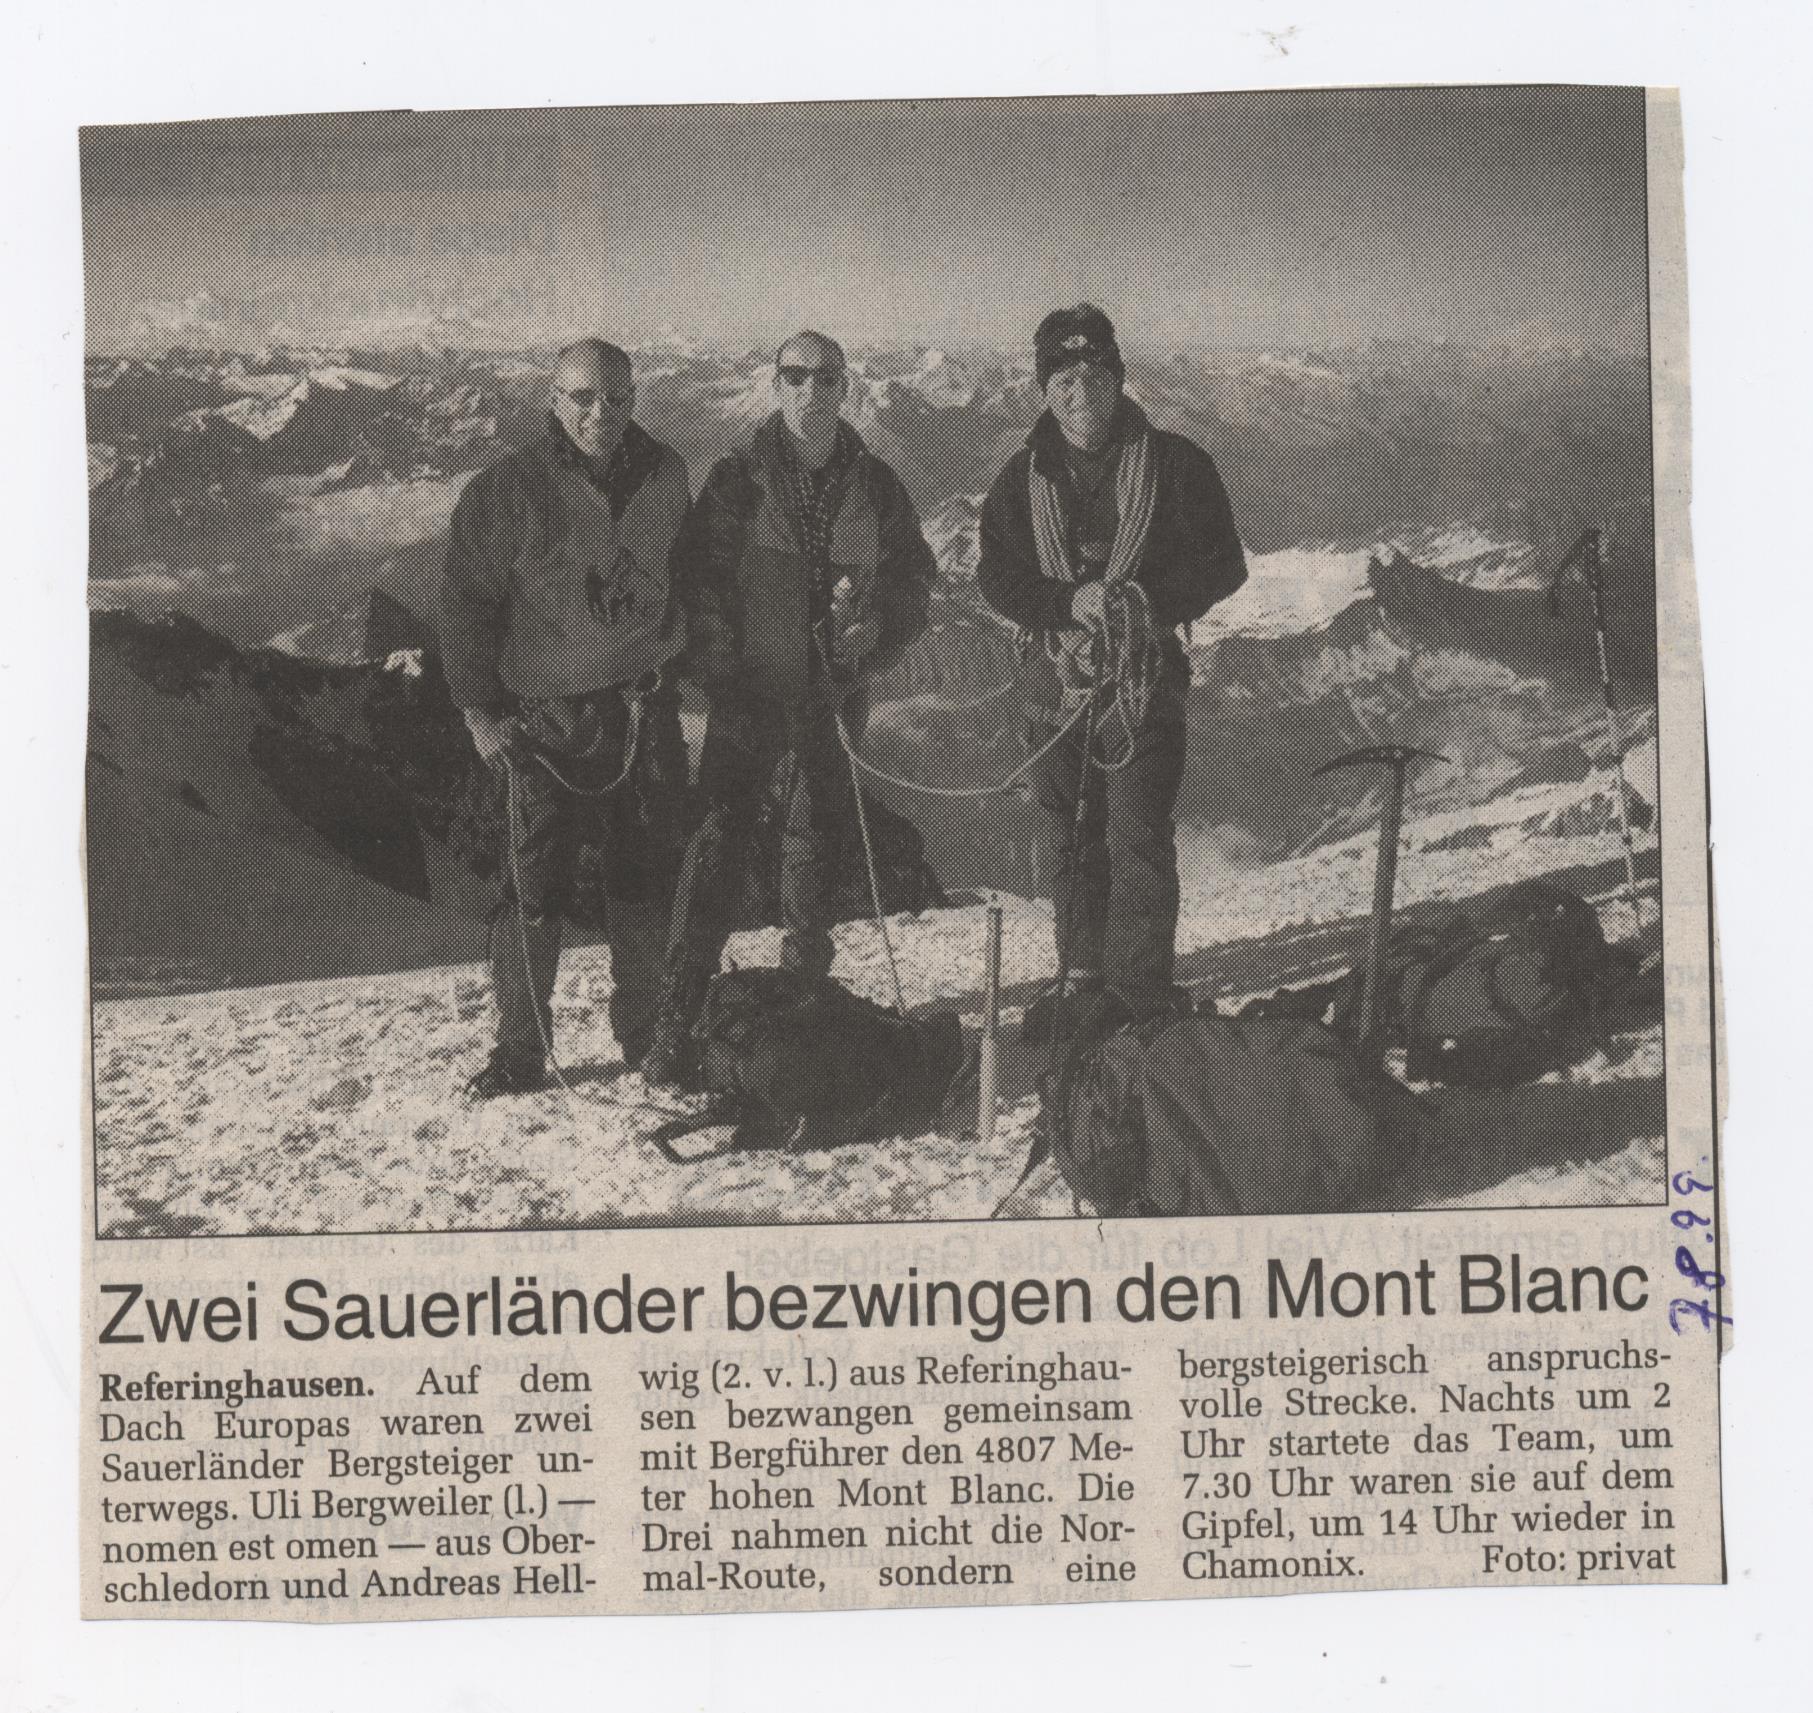 2 Sauerländer bezwingen den Mont Blanc